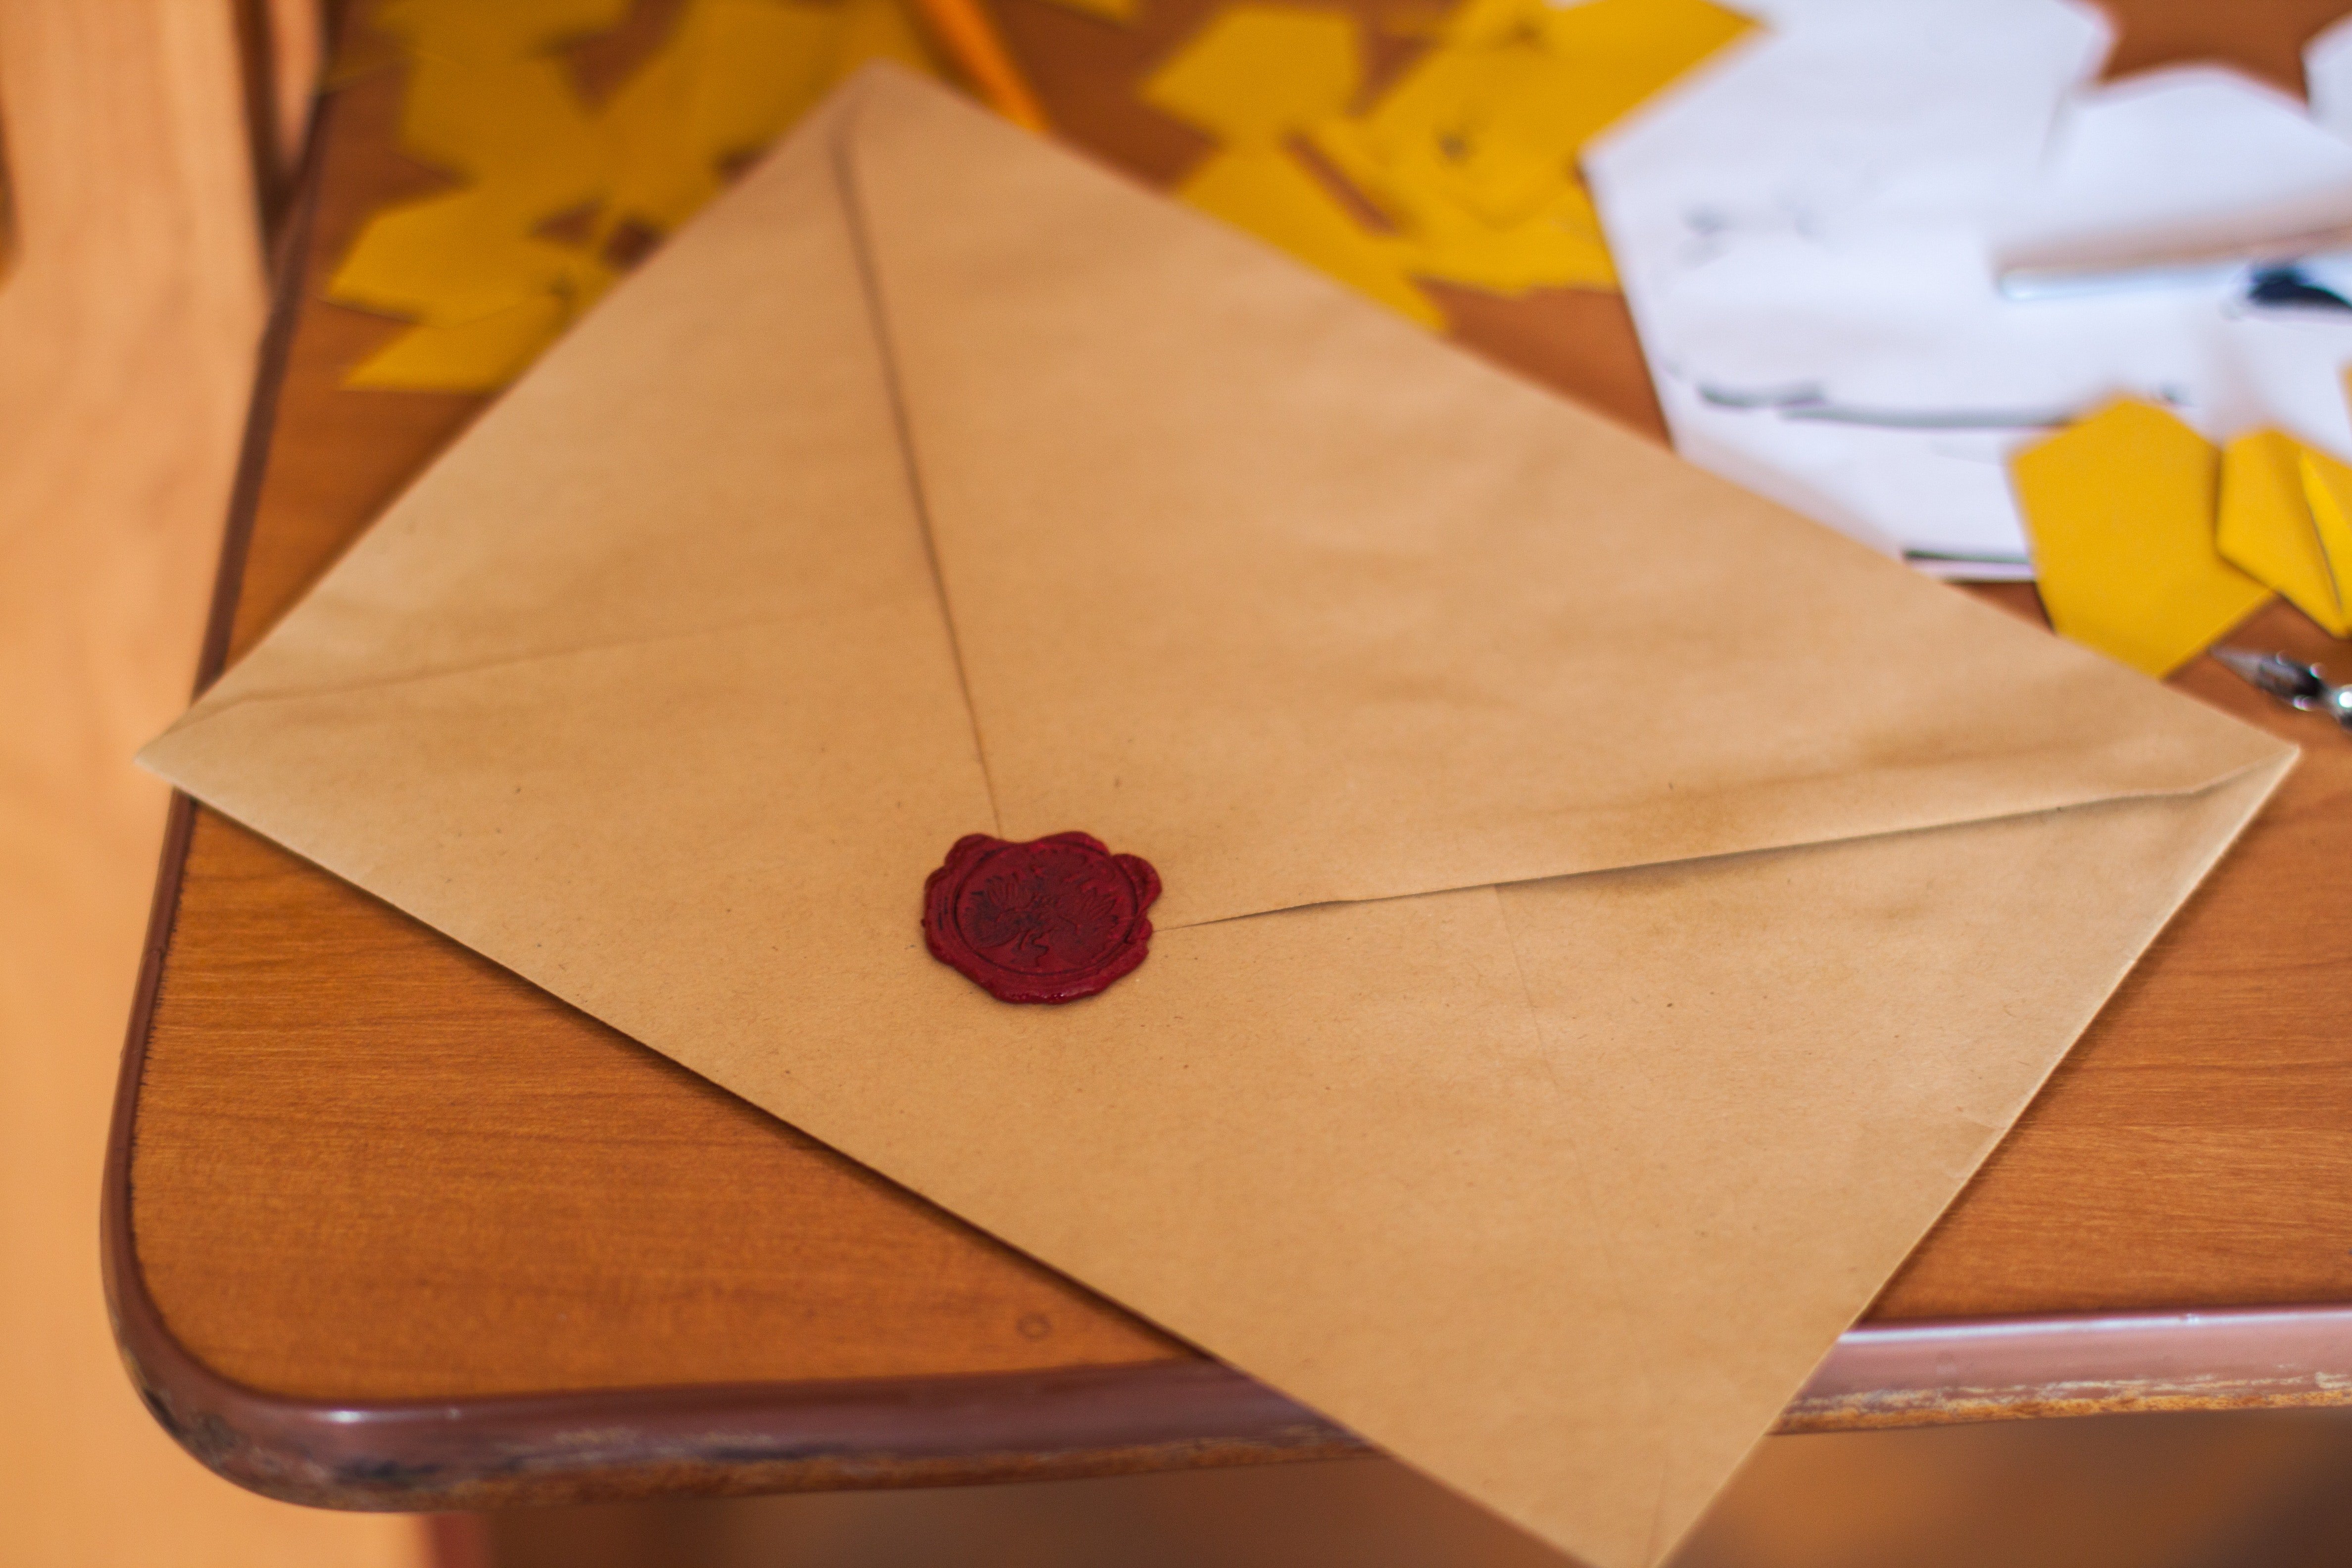 Scarlett hat einen Brief unter einem der Kissen gefunden. | Quelle: Pexels